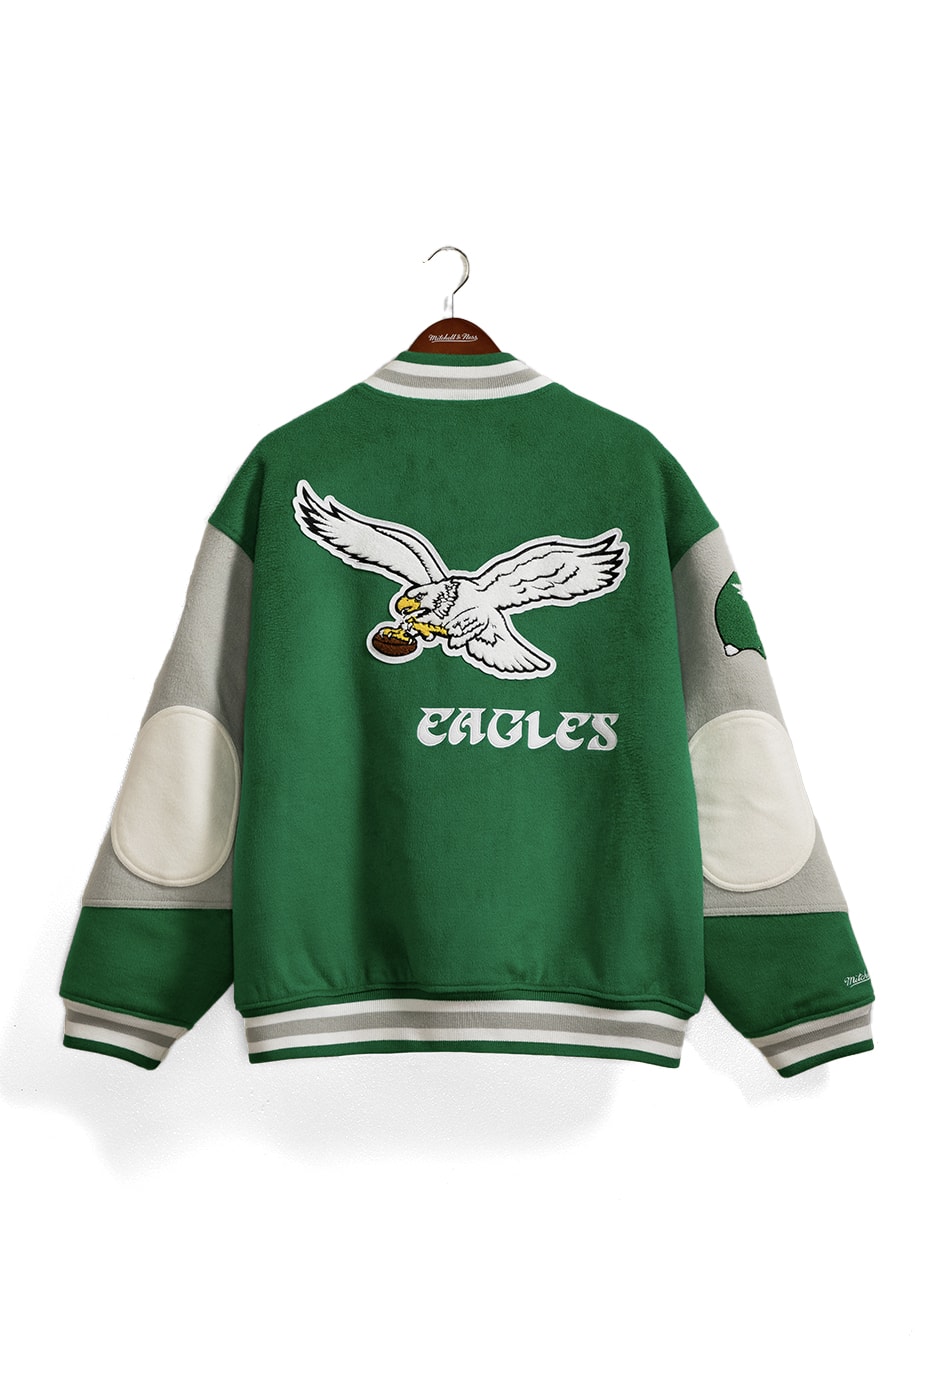 ミッチェル&ネスがダイアナ元妃の着用したフィラデルフィア・イーグルスのジャケットを復刻 michell-ness-1990s-philadelphia-eagles-varsity-jacket-princess-diana-worn-recreated